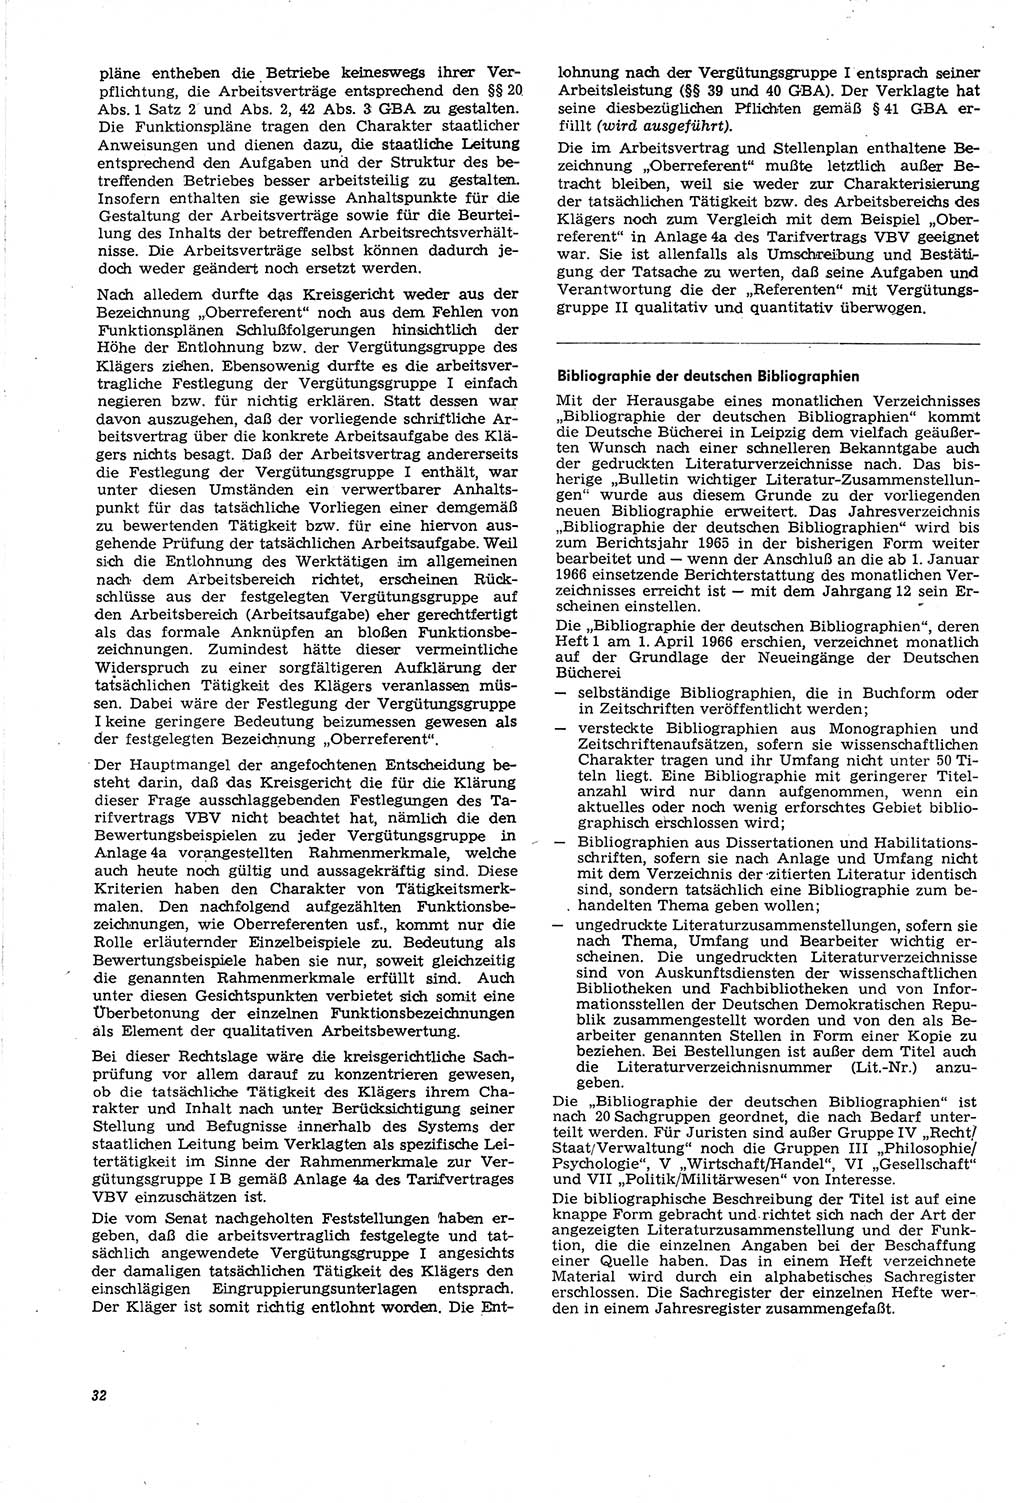 Neue Justiz (NJ), Zeitschrift für Recht und Rechtswissenschaft [Deutsche Demokratische Republik (DDR)], 21. Jahrgang 1967, Seite 32 (NJ DDR 1967, S. 32)